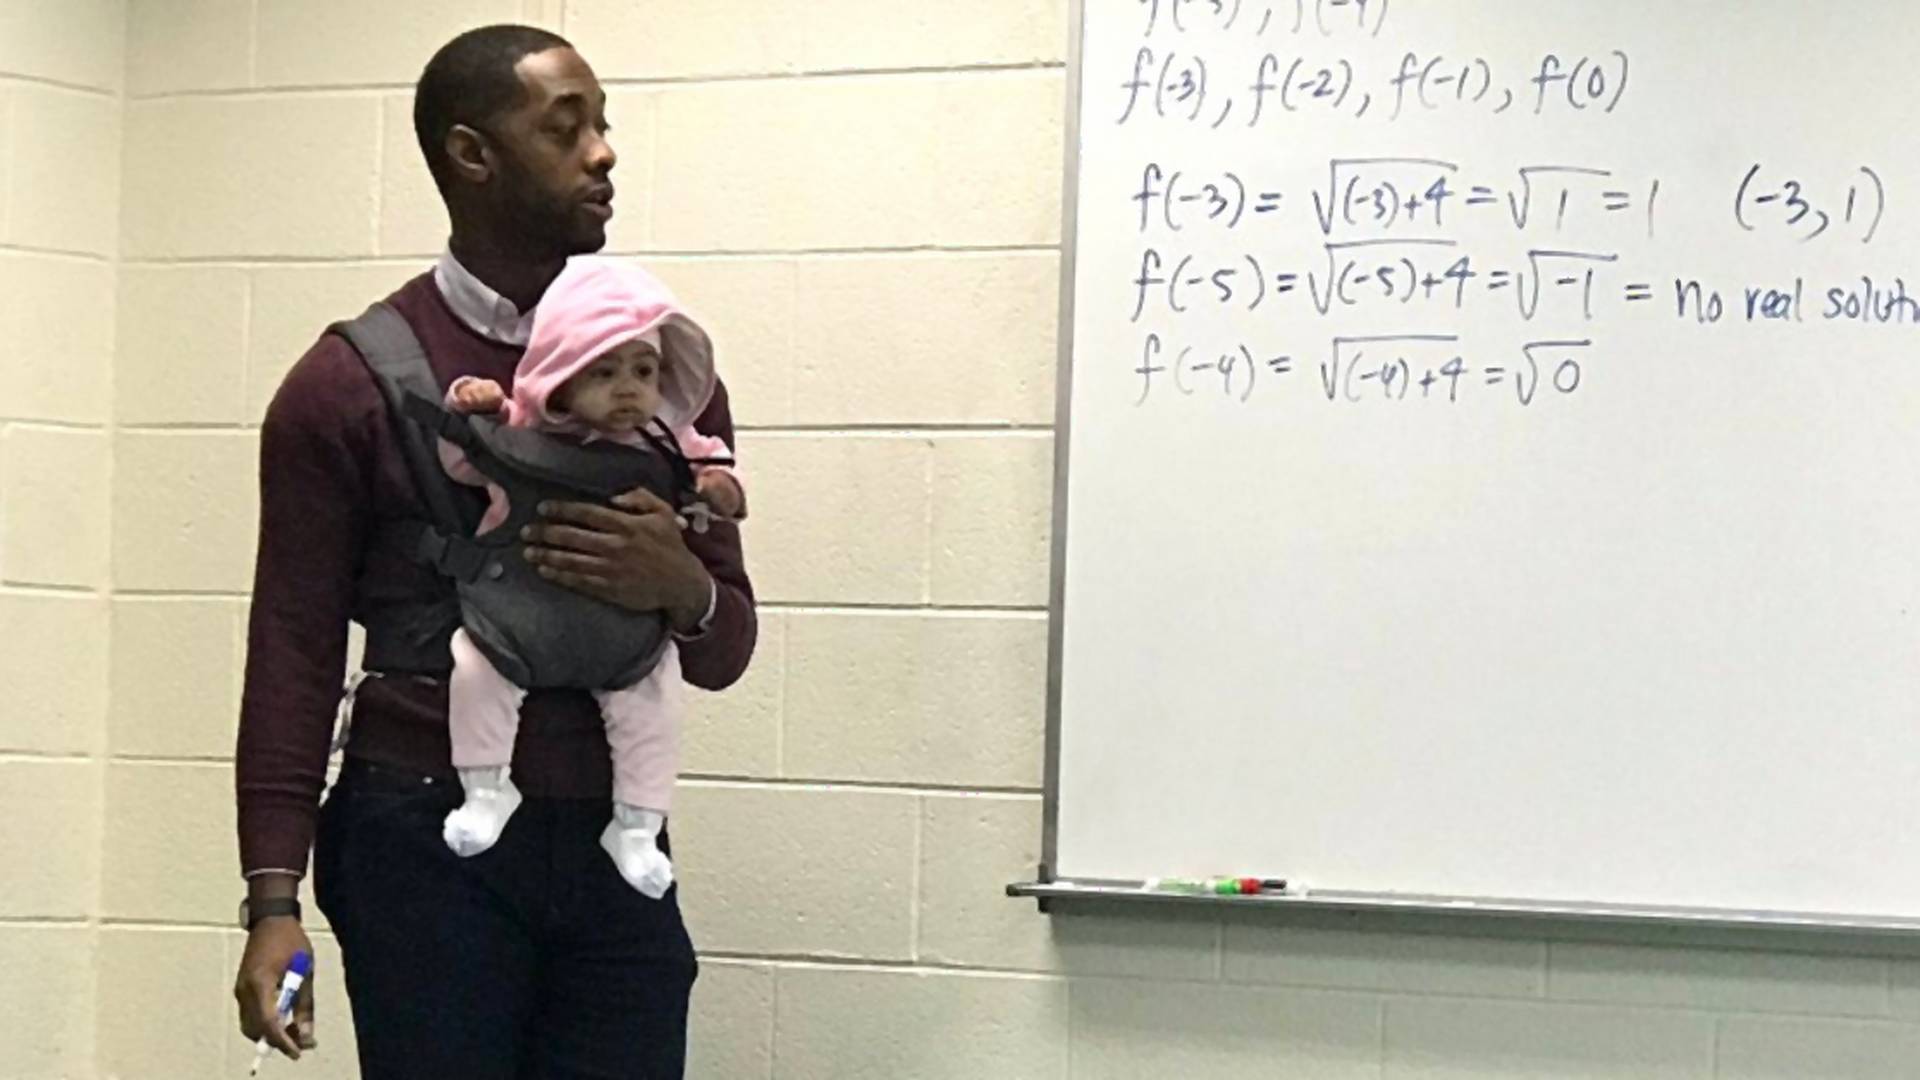 Učiteľ strážil dieťa svojho študenta počas celej prednášky, aby si mohol písať poznámky